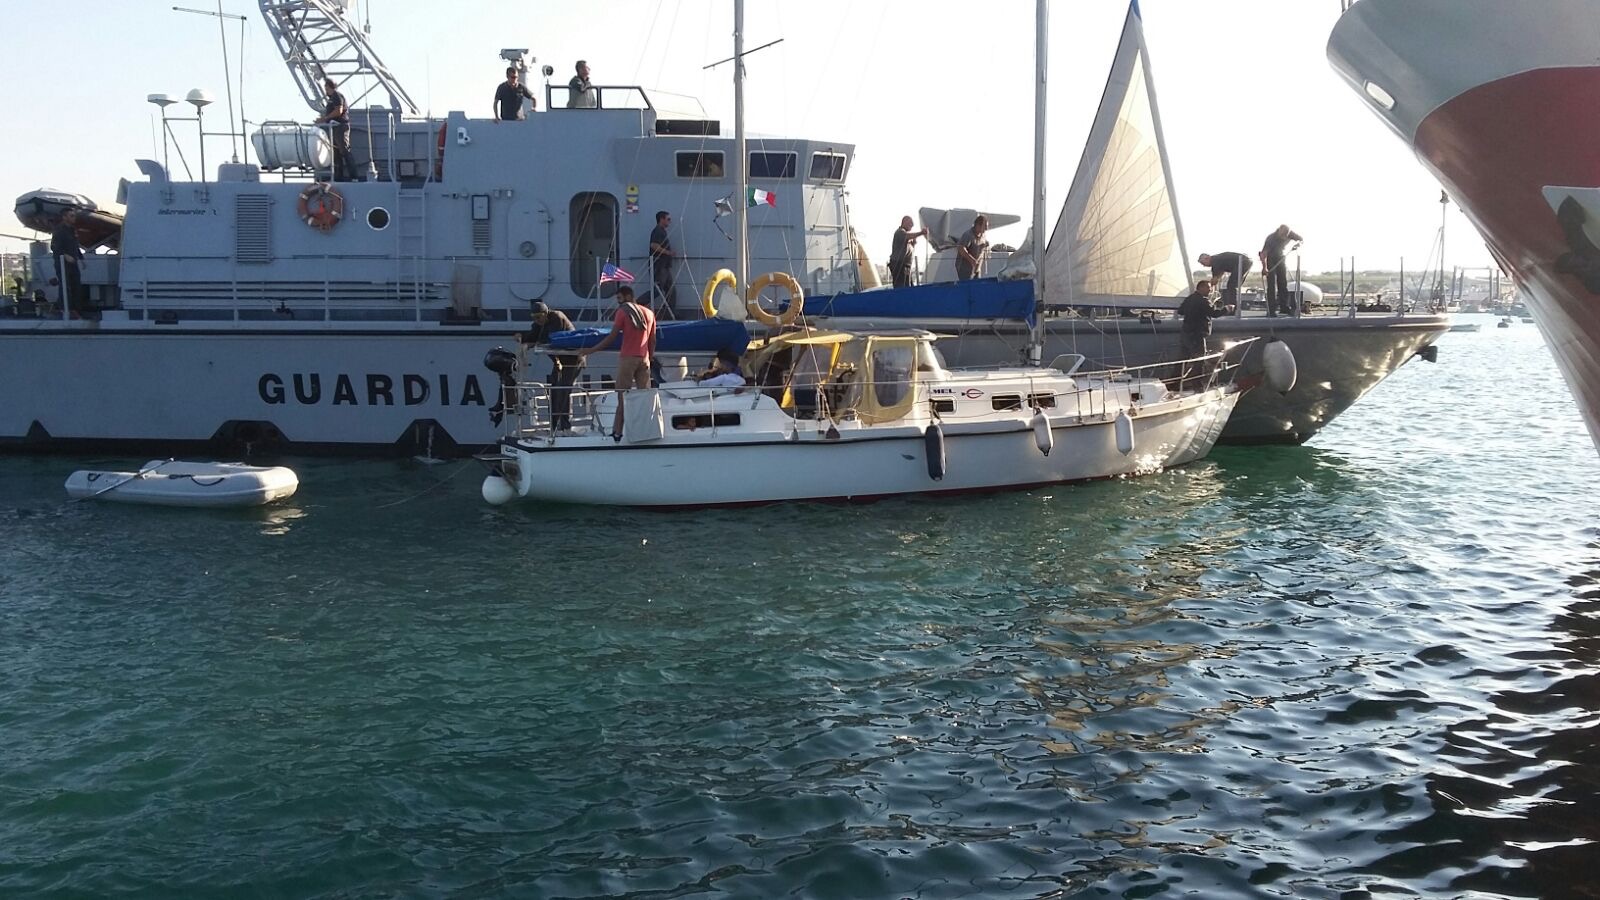 Migranti in barca a vela a Portopalo, due fermi della polizia